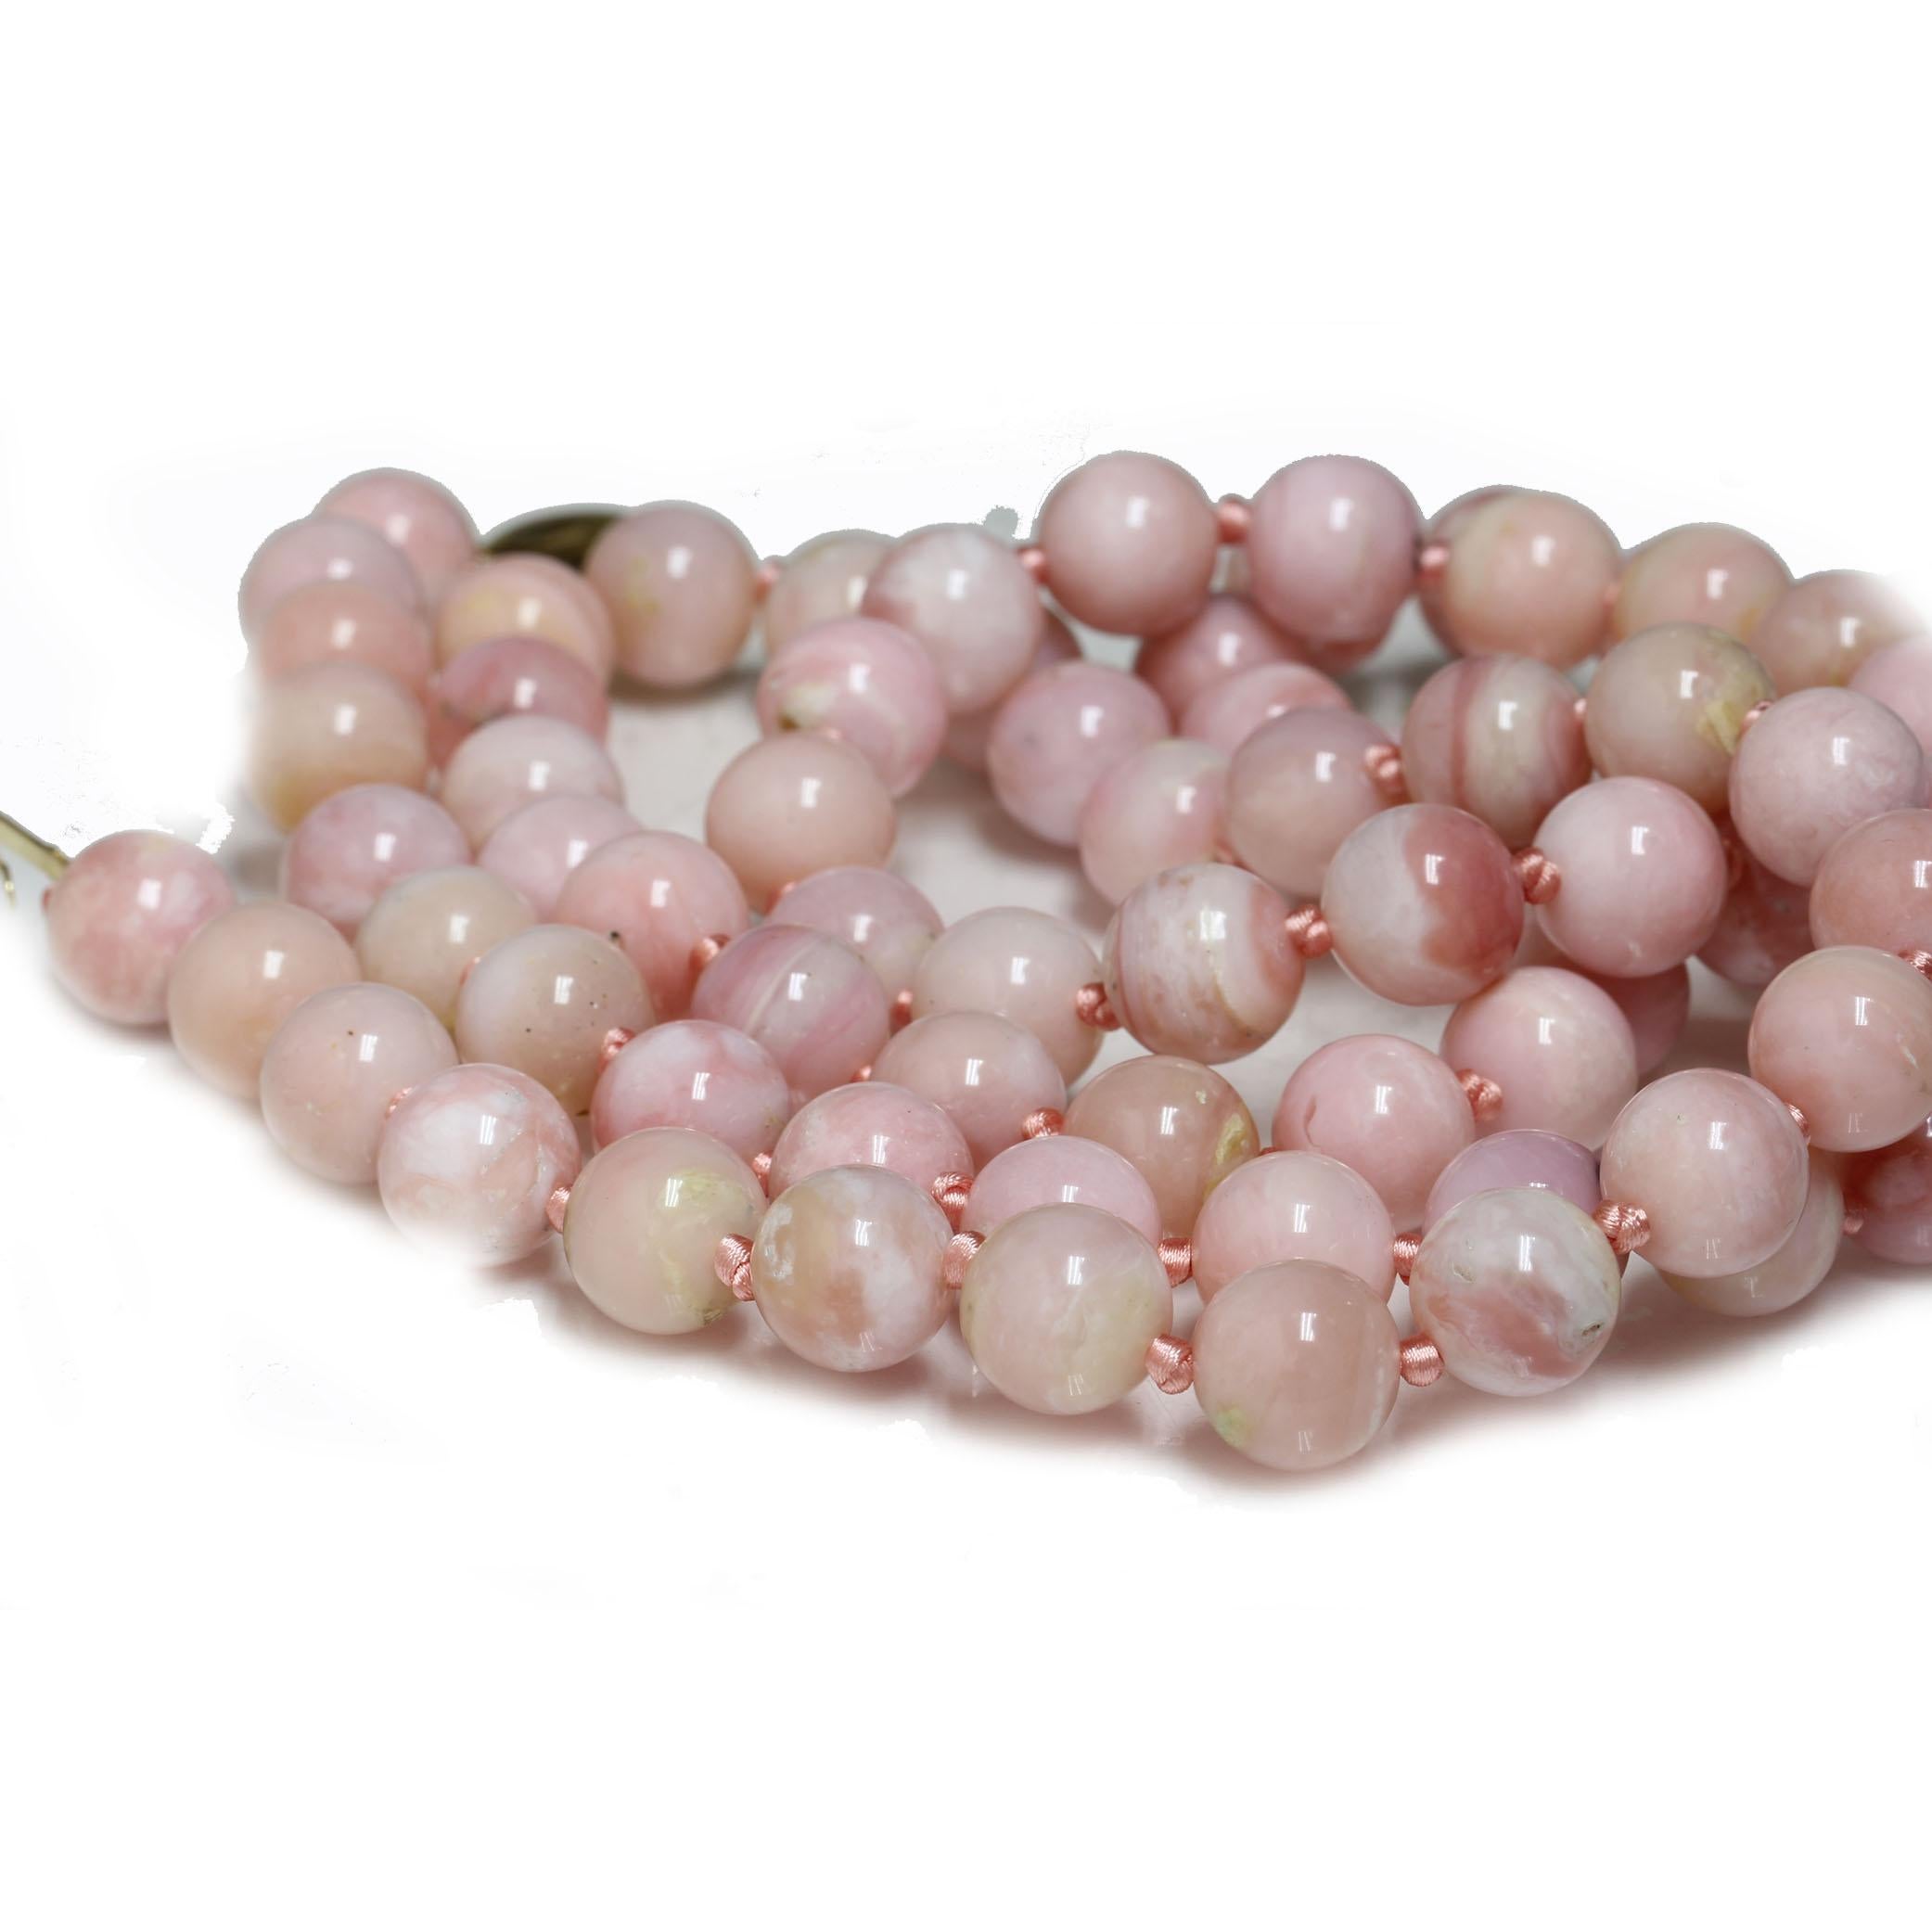 Verleihen Sie Ihrem Dekolleté einen wunderschönen Farbtupfer mit diesen atemberaubenden runden Pink Opal Perlen. Ein einzigartiges Accessoire, das aber auch vielseitig genug ist, um es zu fast allem zu tragen.  Die Halskette ist 11 mm groß,